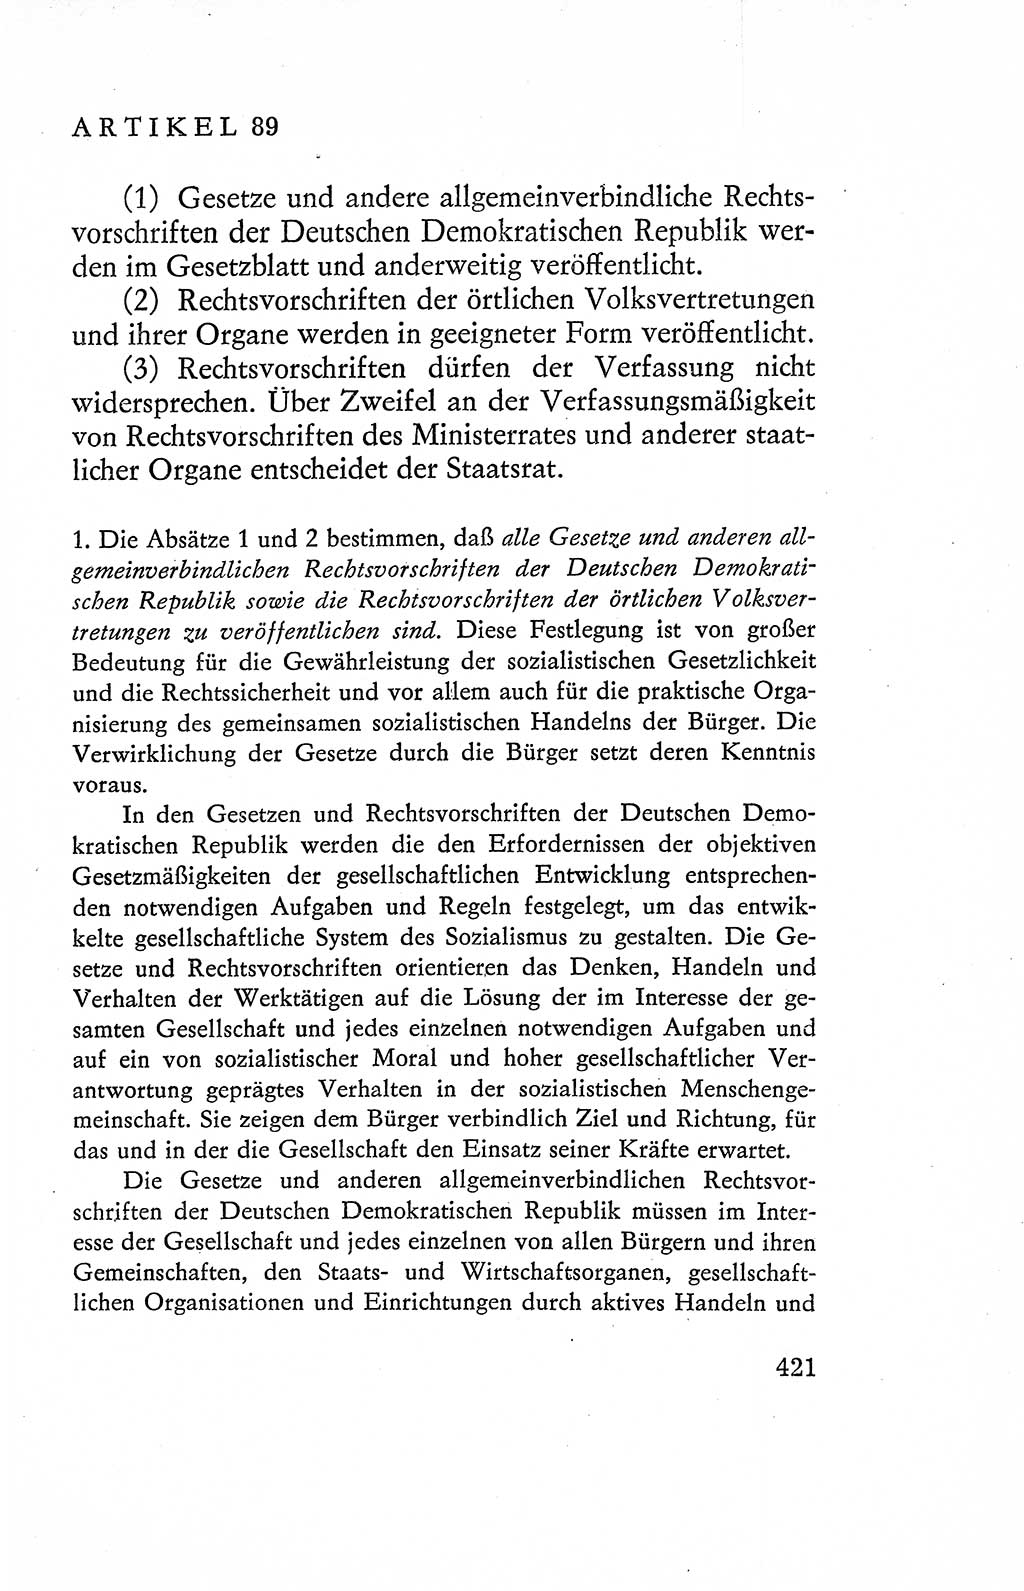 Verfassung der Deutschen Demokratischen Republik (DDR), Dokumente, Kommentar 1969, Band 2, Seite 421 (Verf. DDR Dok. Komm. 1969, Bd. 2, S. 421)